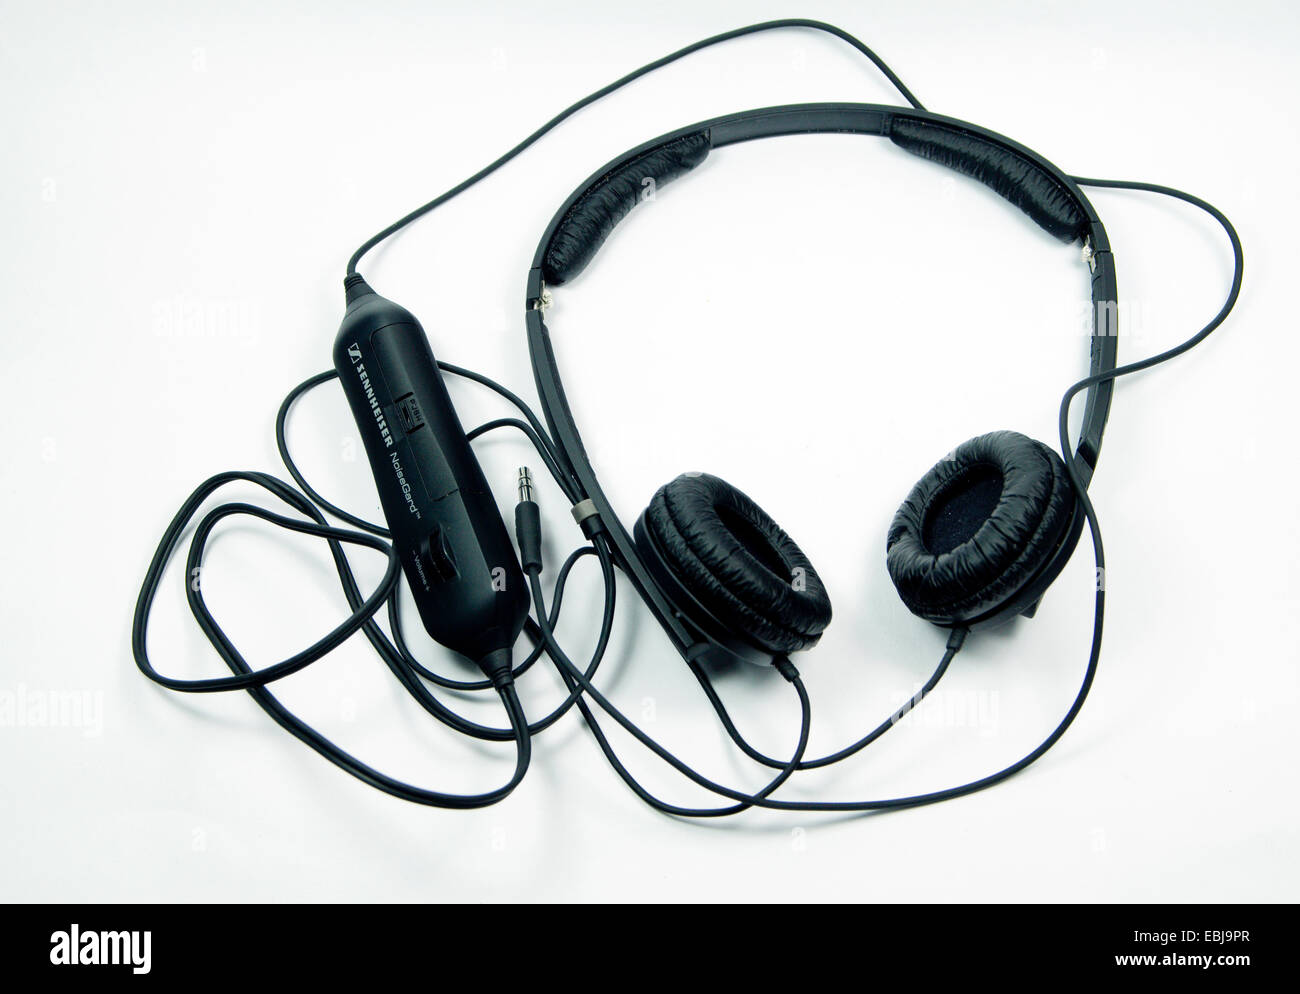 Pair of noise isolating headphones. Stock Photo